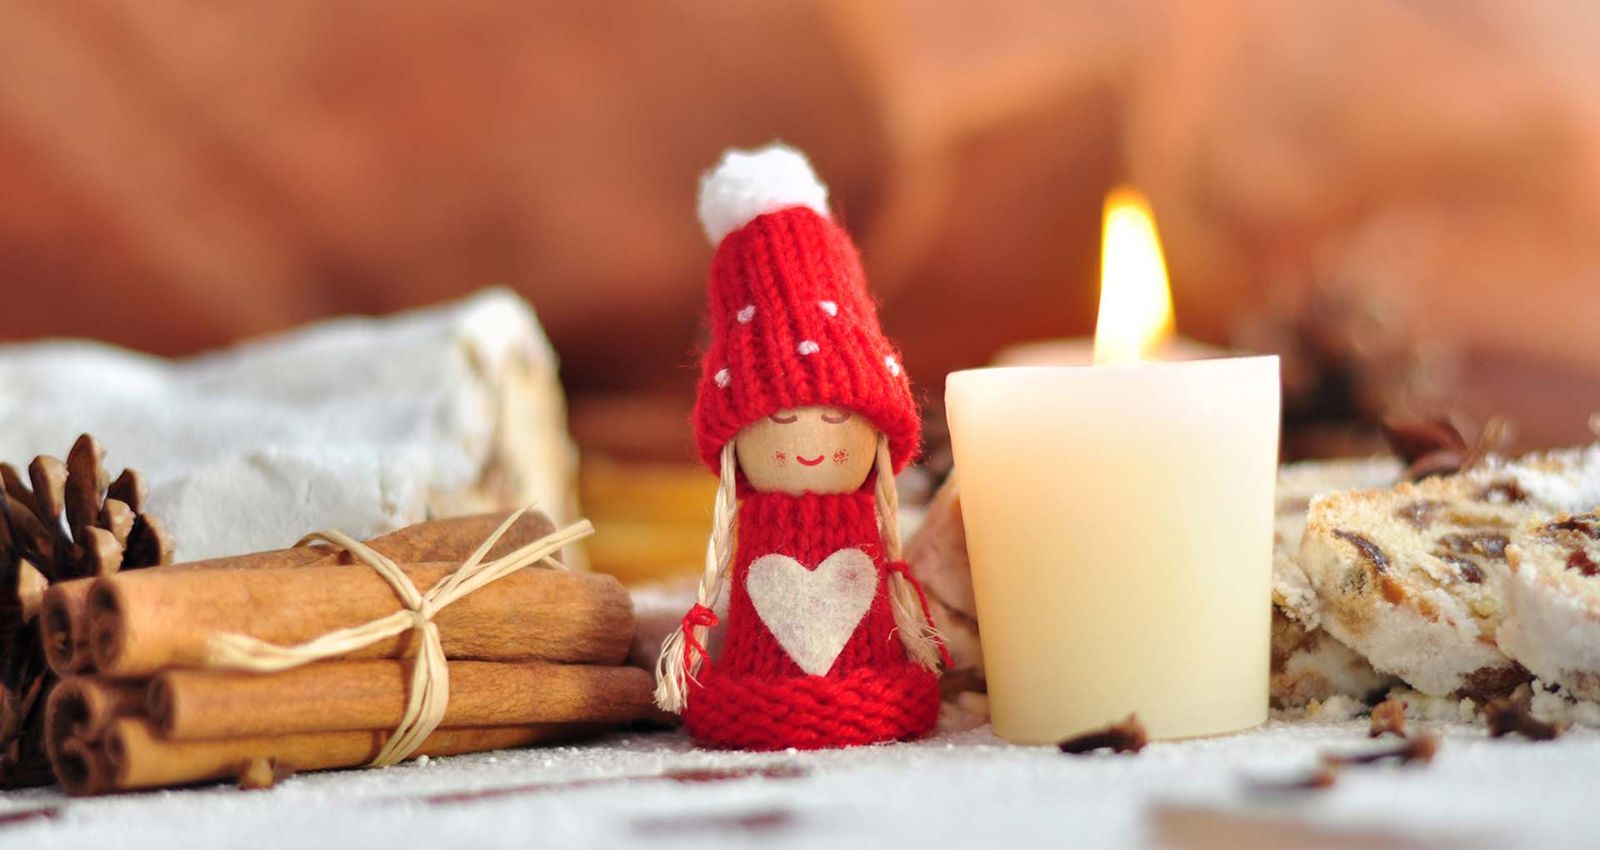 Bastelvorlagen zu Weihnachten – 15 schöne Ideen zum Ausdrucken